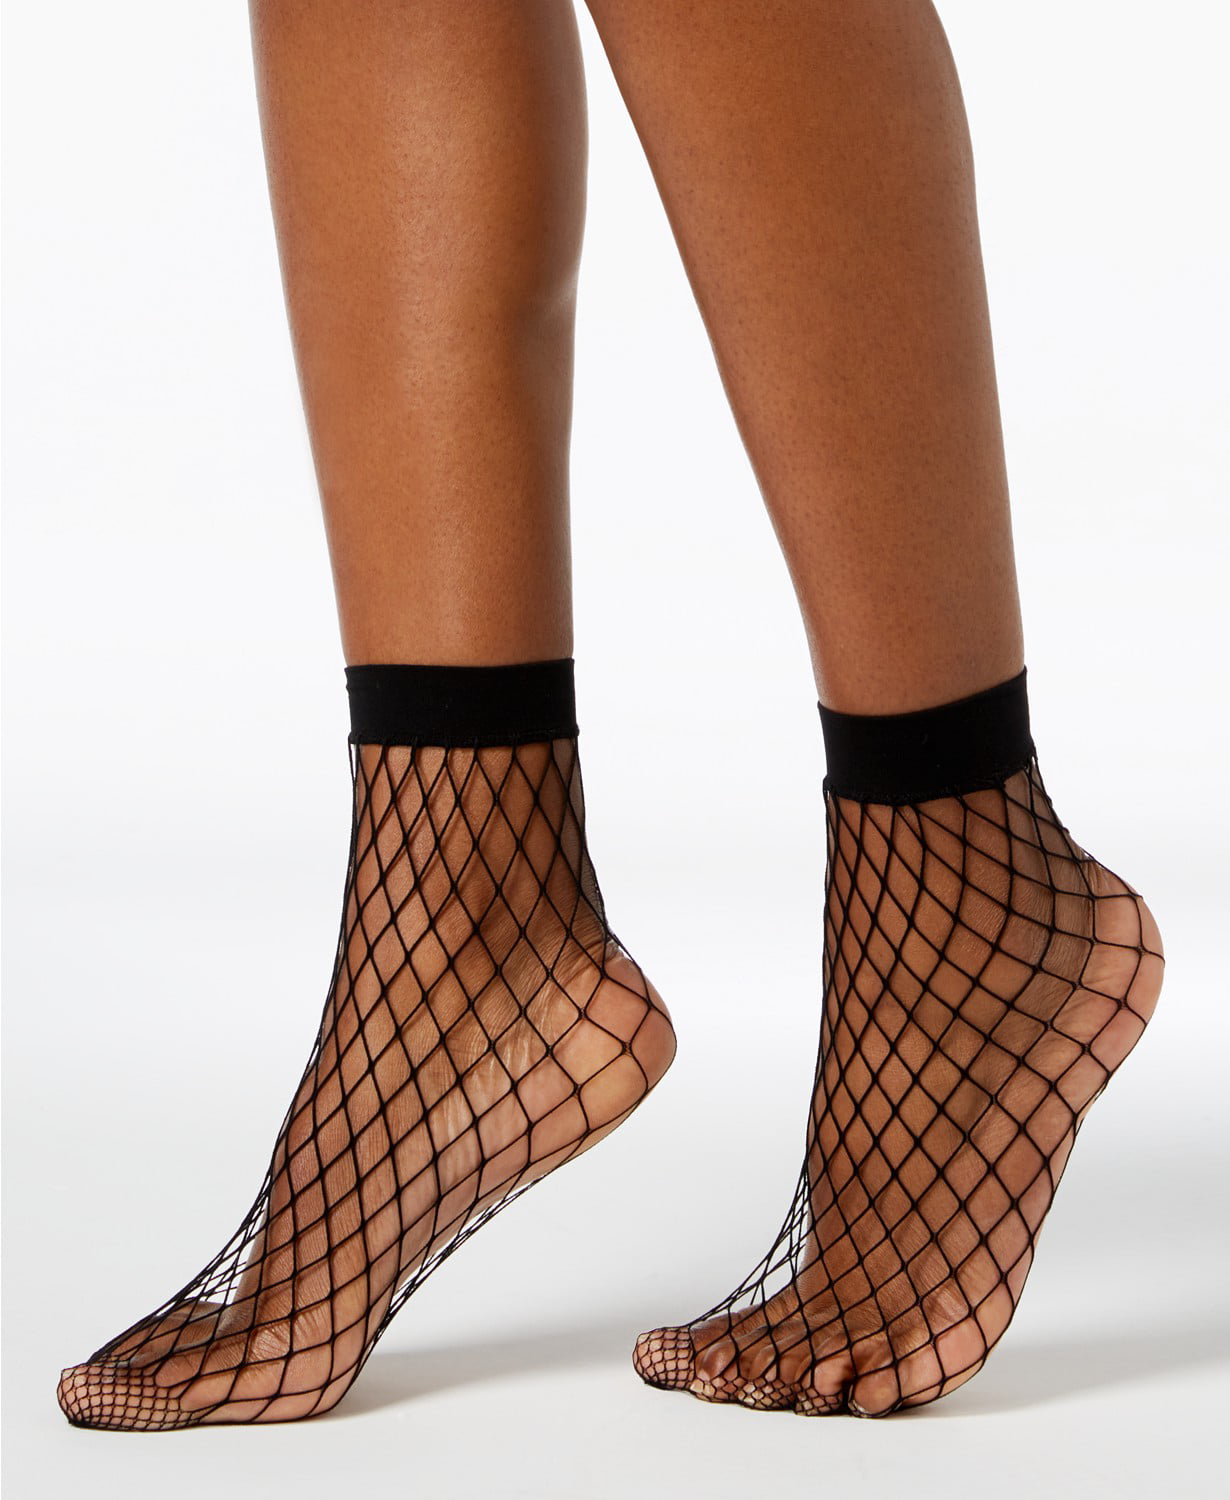 Anklet Socks Black One Size 4 pair A New Day Women's Fishnet 20D Sheer 2pk 